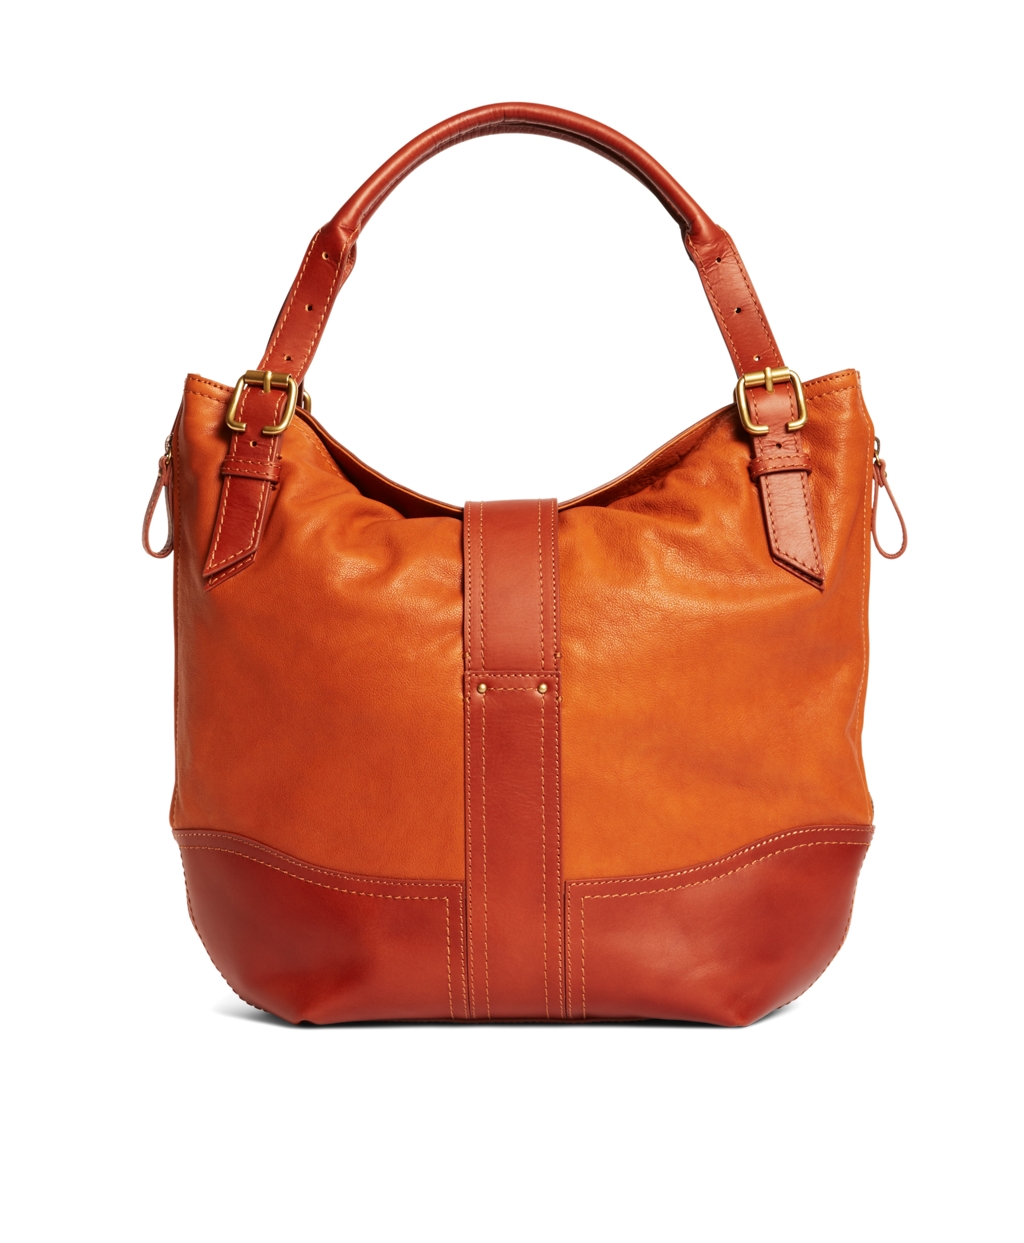 Lyst - Brooks Brothers Shrunken Leather Large Hobo Bag in Orange